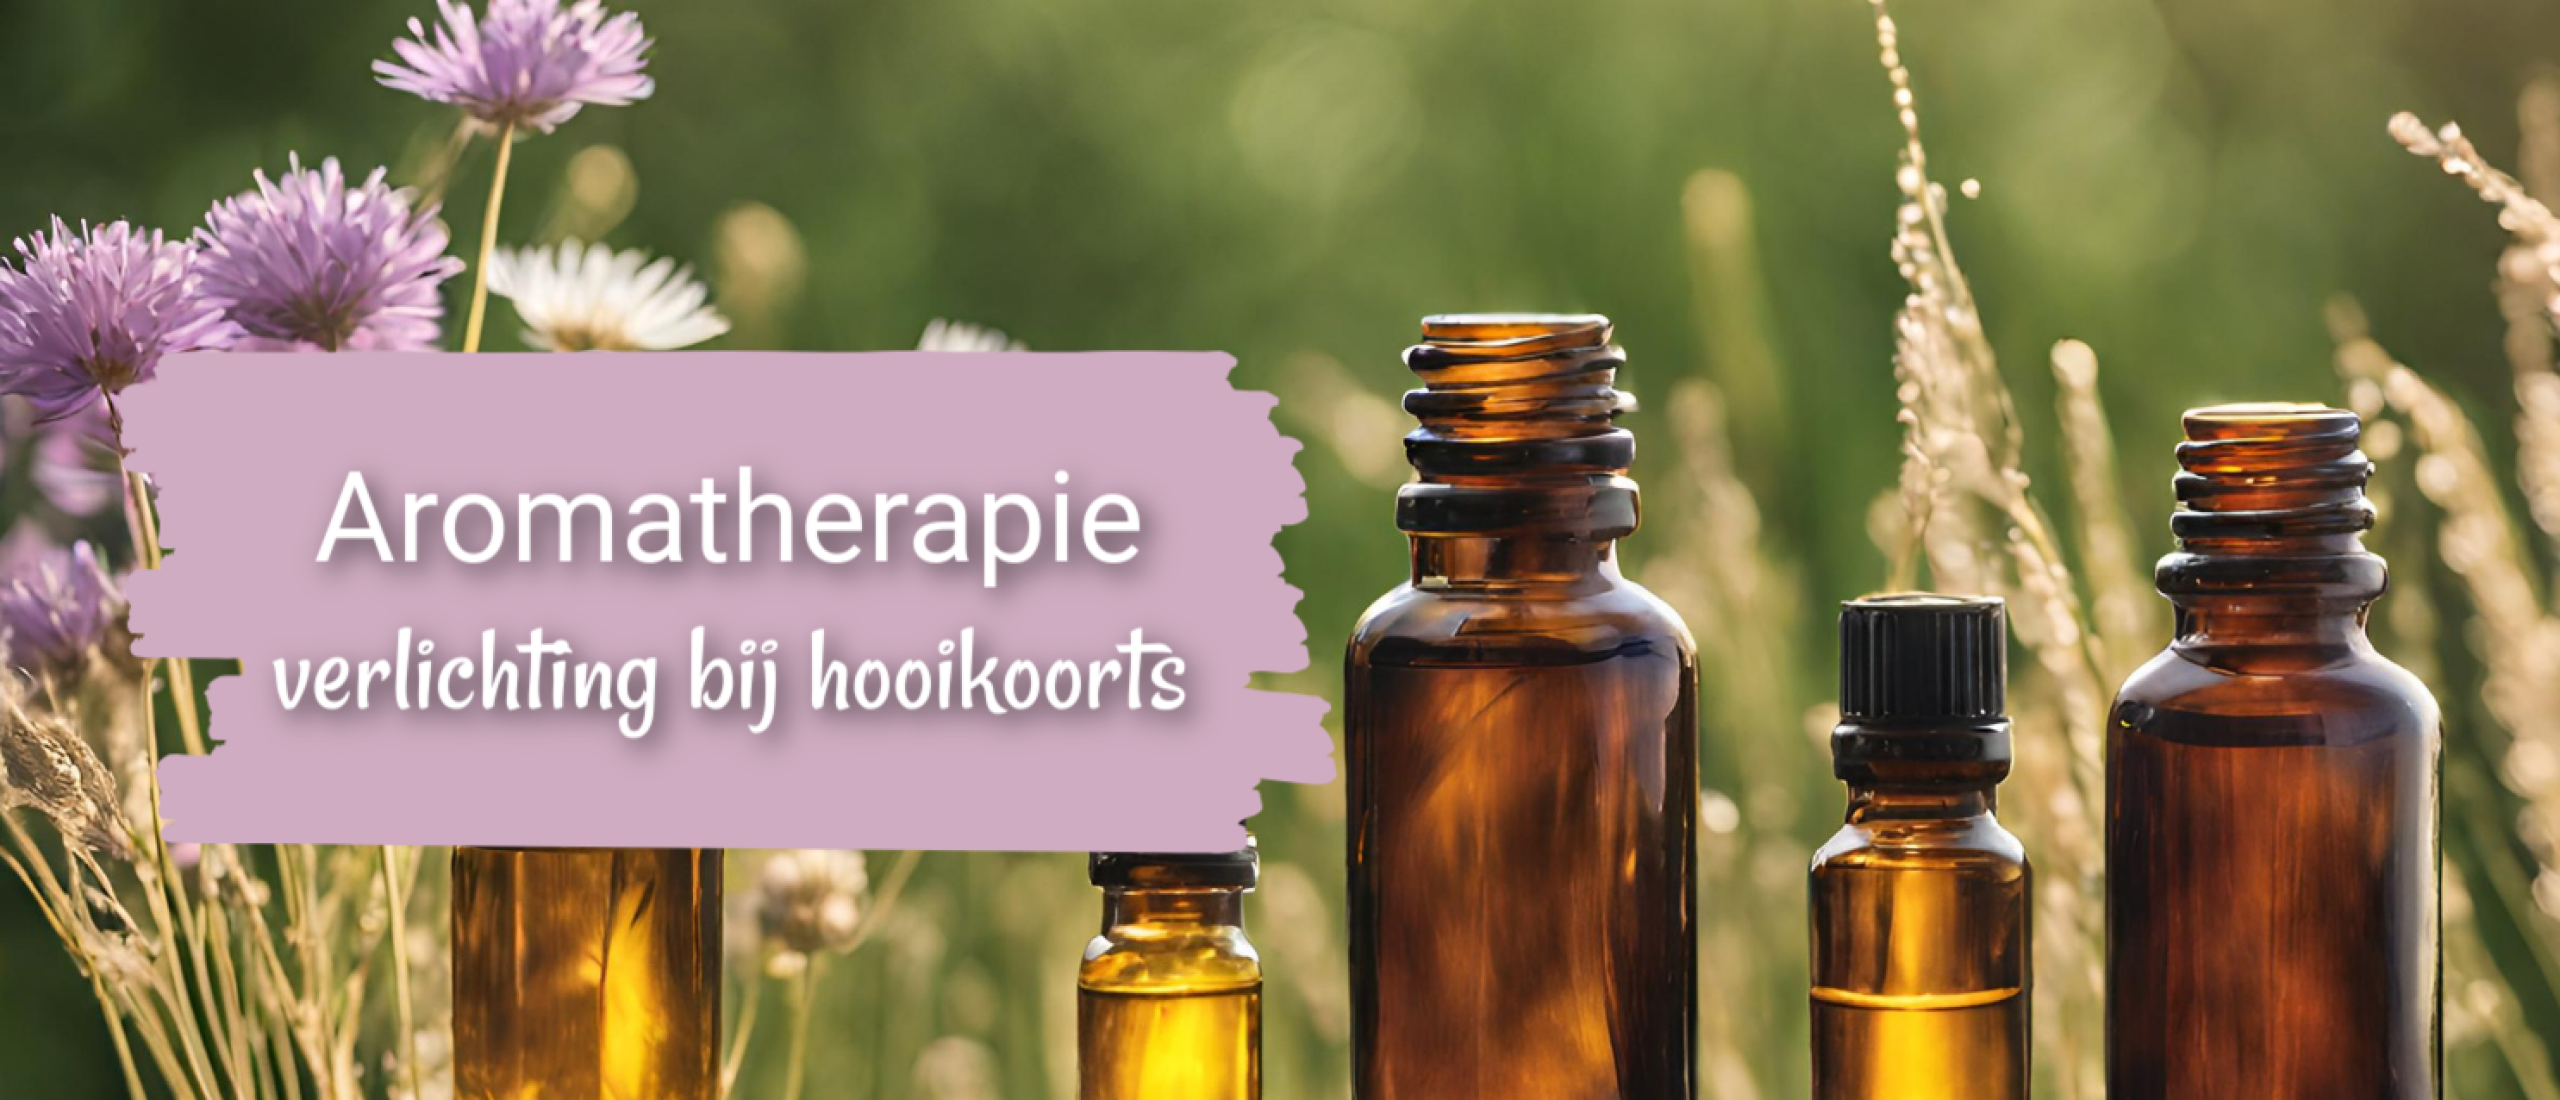 aromatherapie tegen hooikoorts